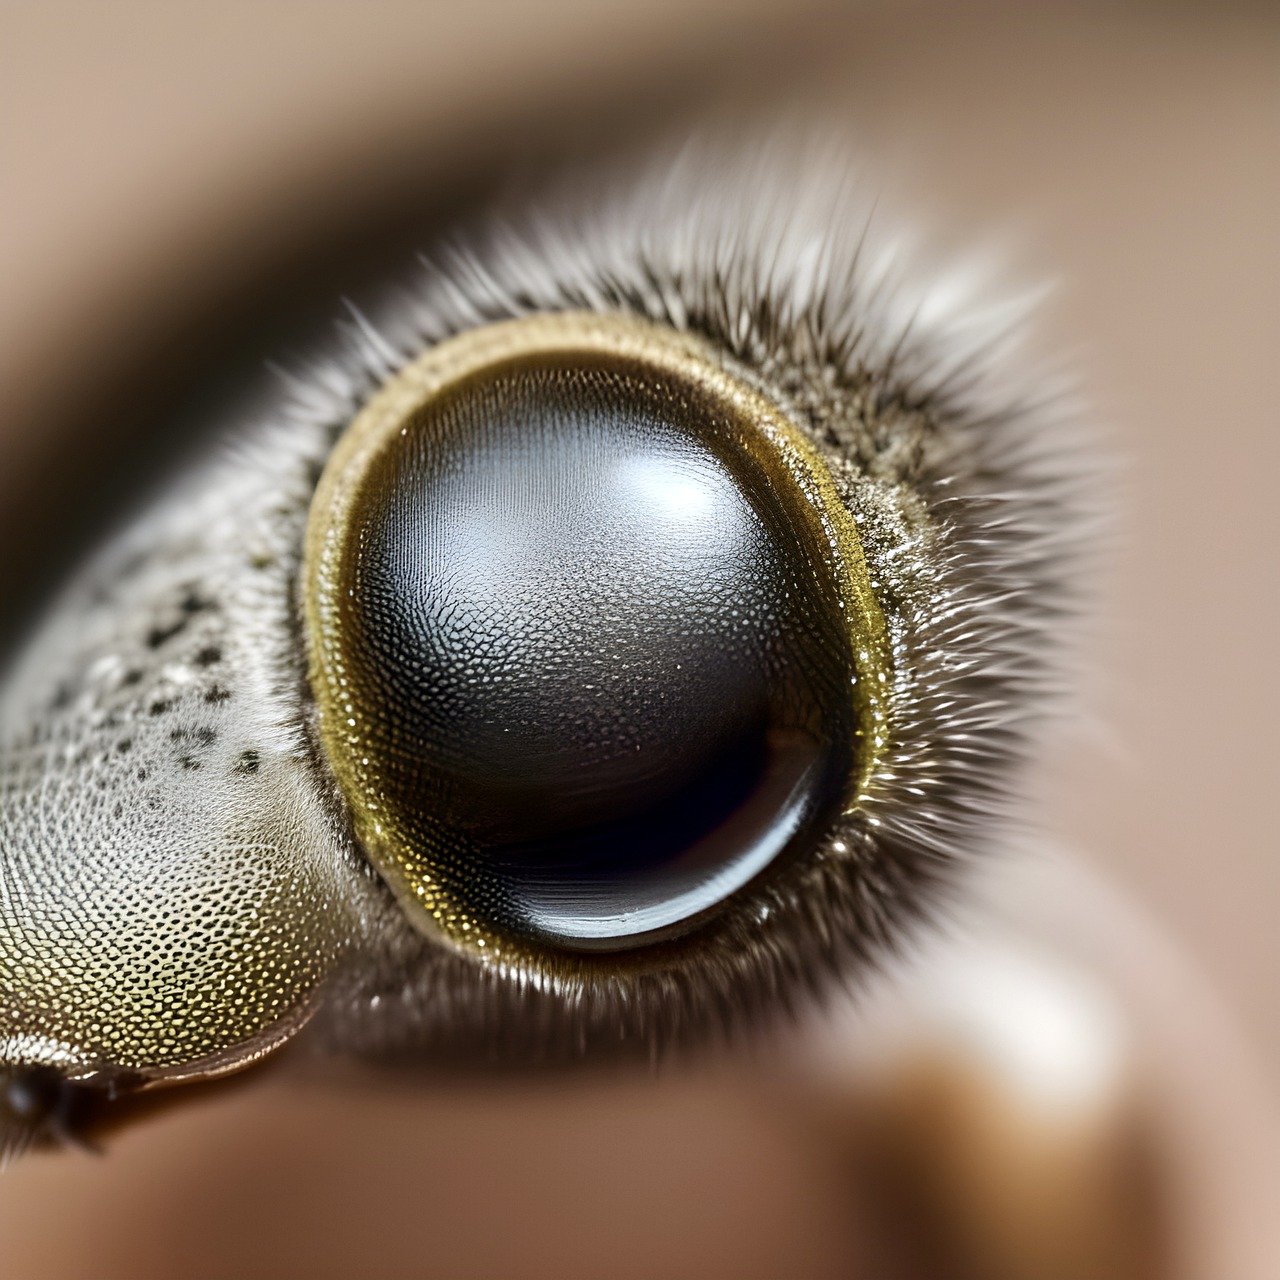 Fotografía del ojo de un insecto